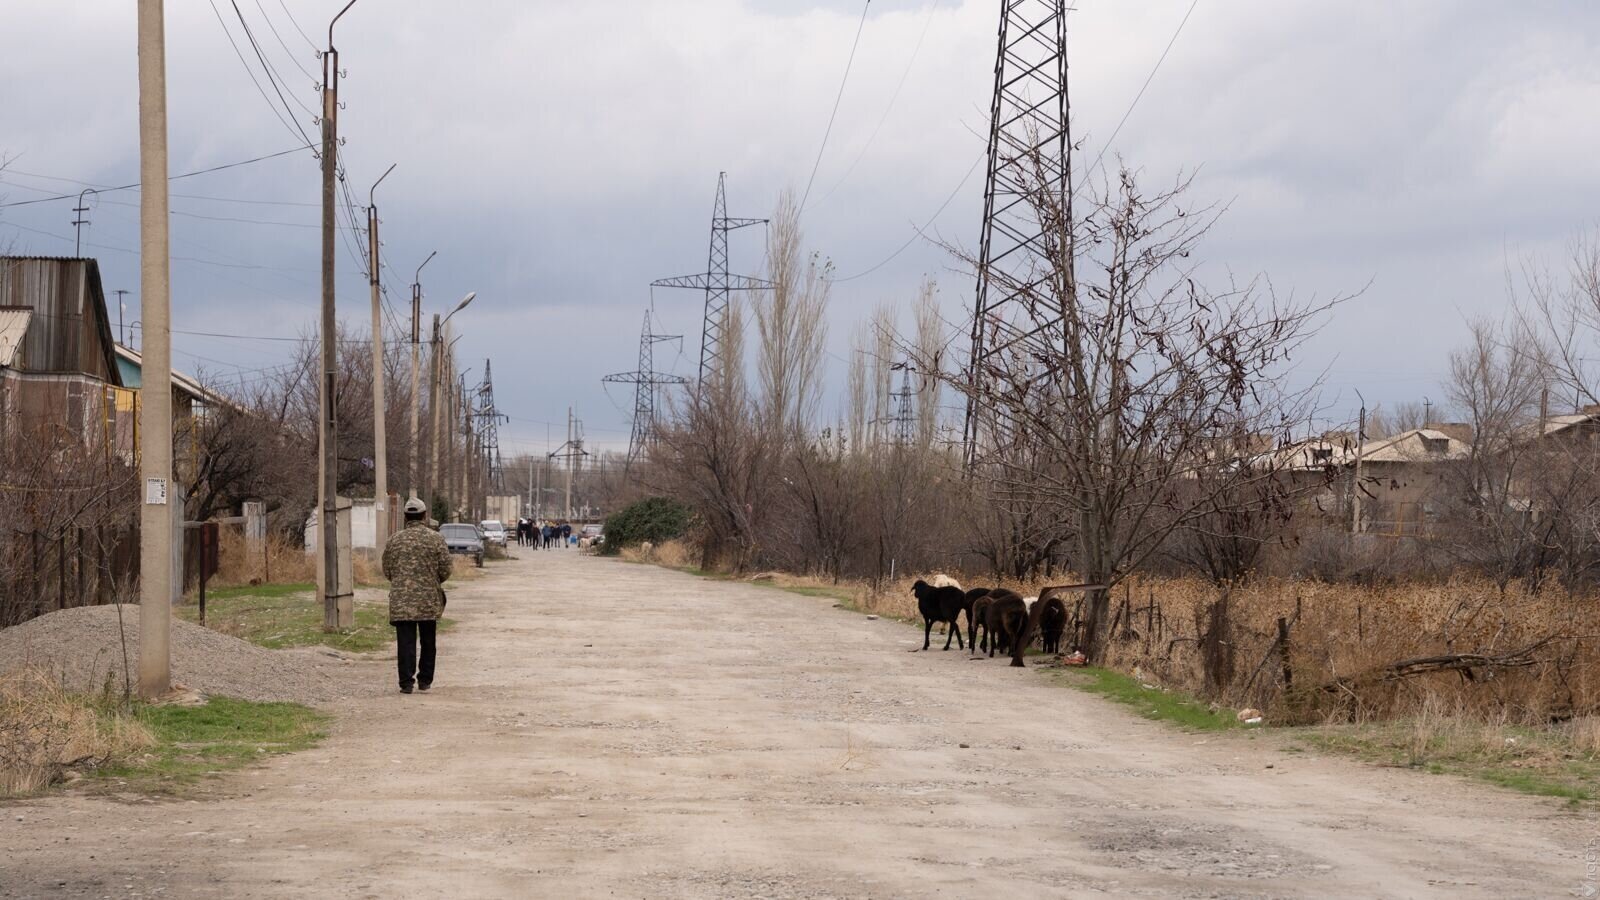 Скотоводство и взаимопомощь: чем занимаются кандасы на юго-востоке Казахстана? 